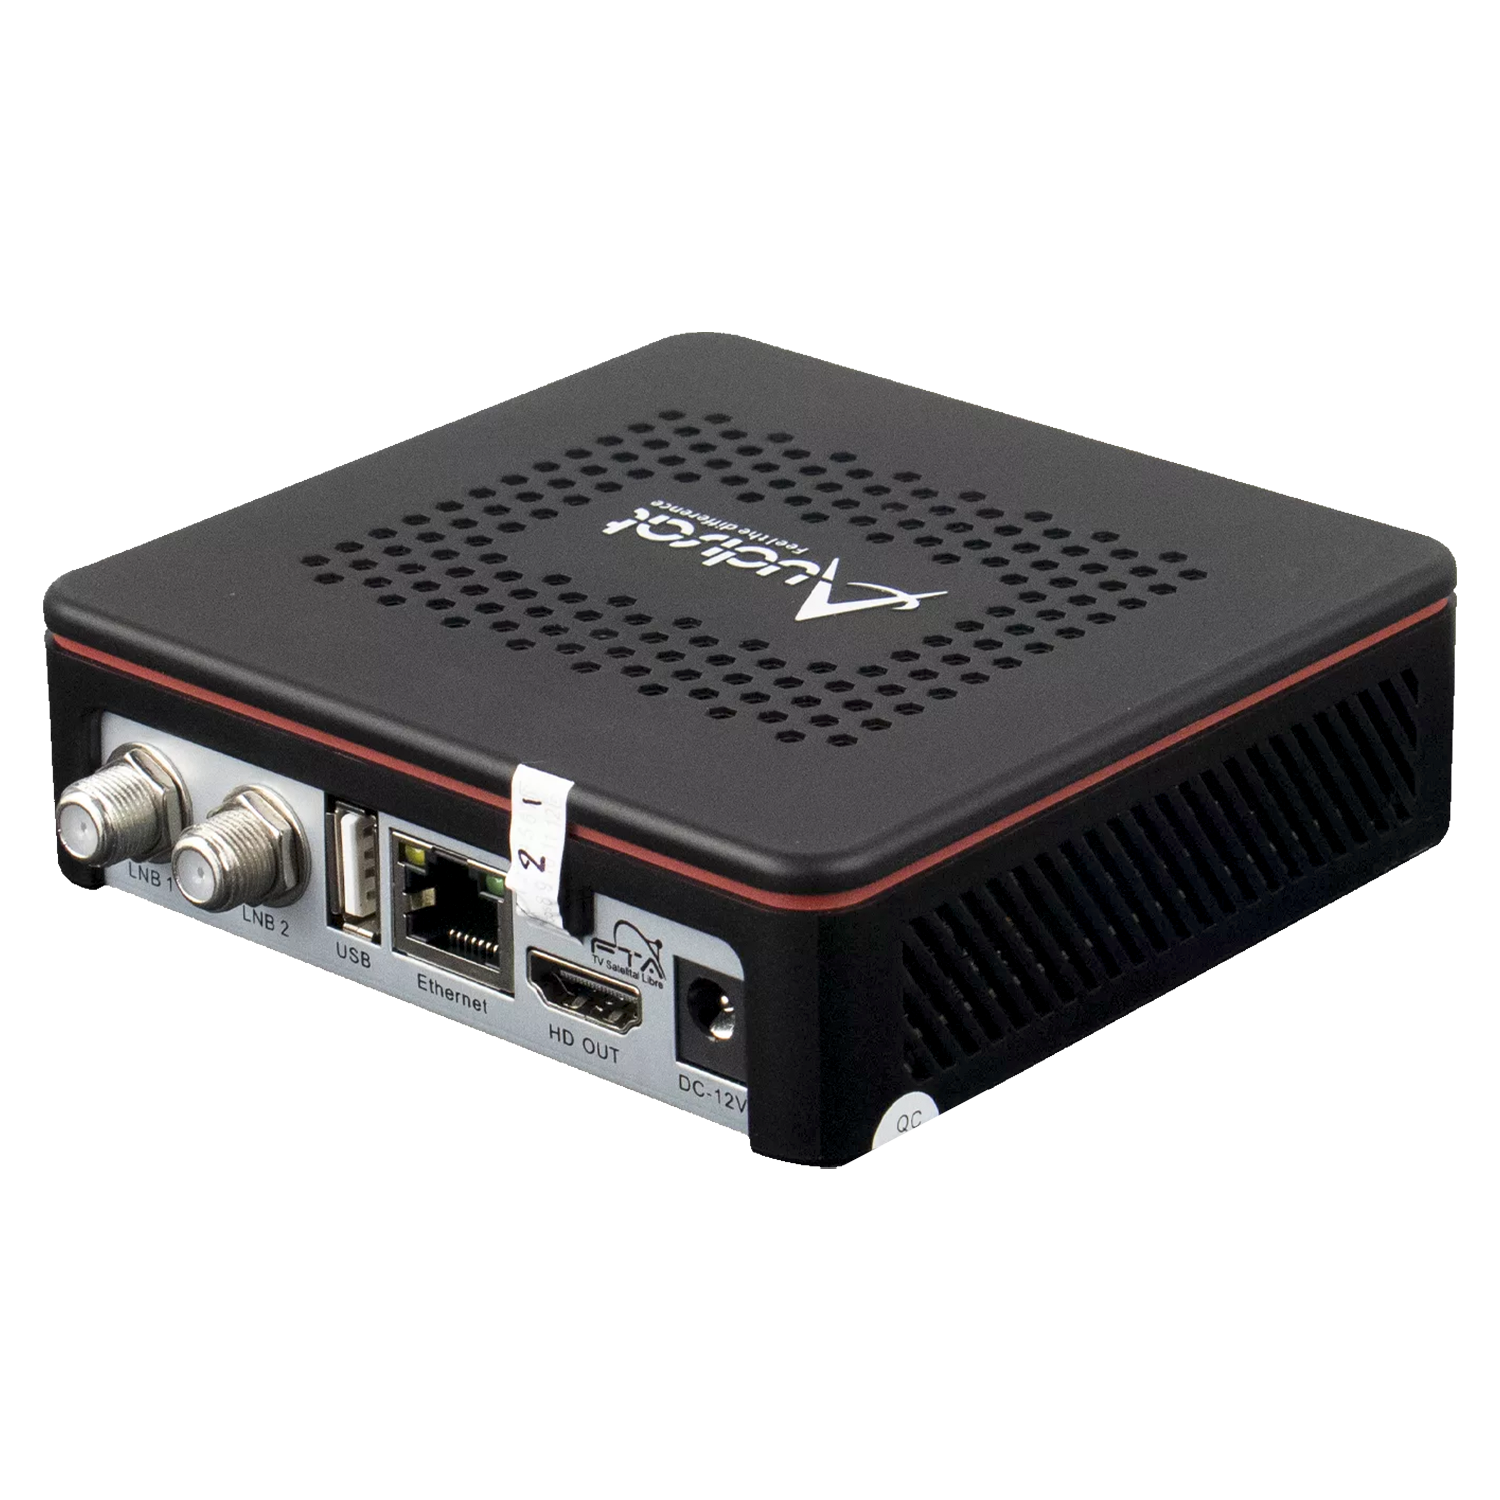 Receptor Audisat K40 Diablo Full HD Wi-Fi ACM - Preto